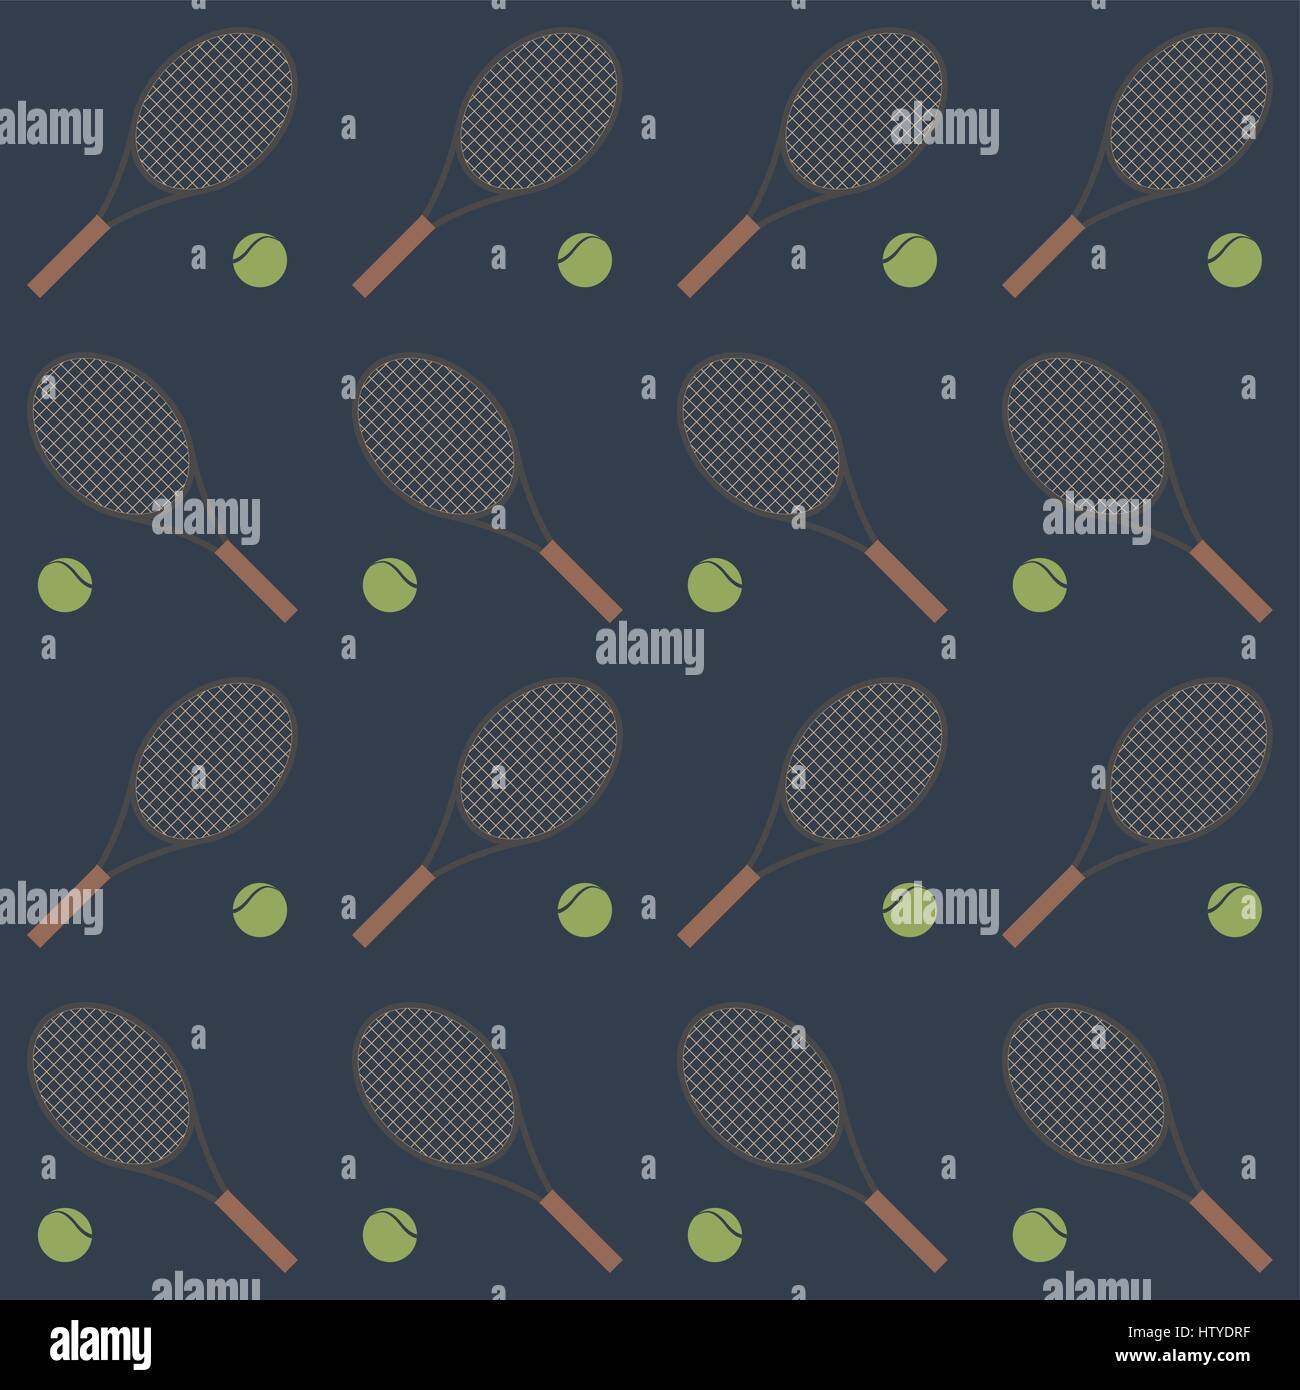 Sport sfondo senza giunture con elementi di attrezzatura per tennis, racchette e palle illustrazione vettoriale. Illustrazione Vettoriale